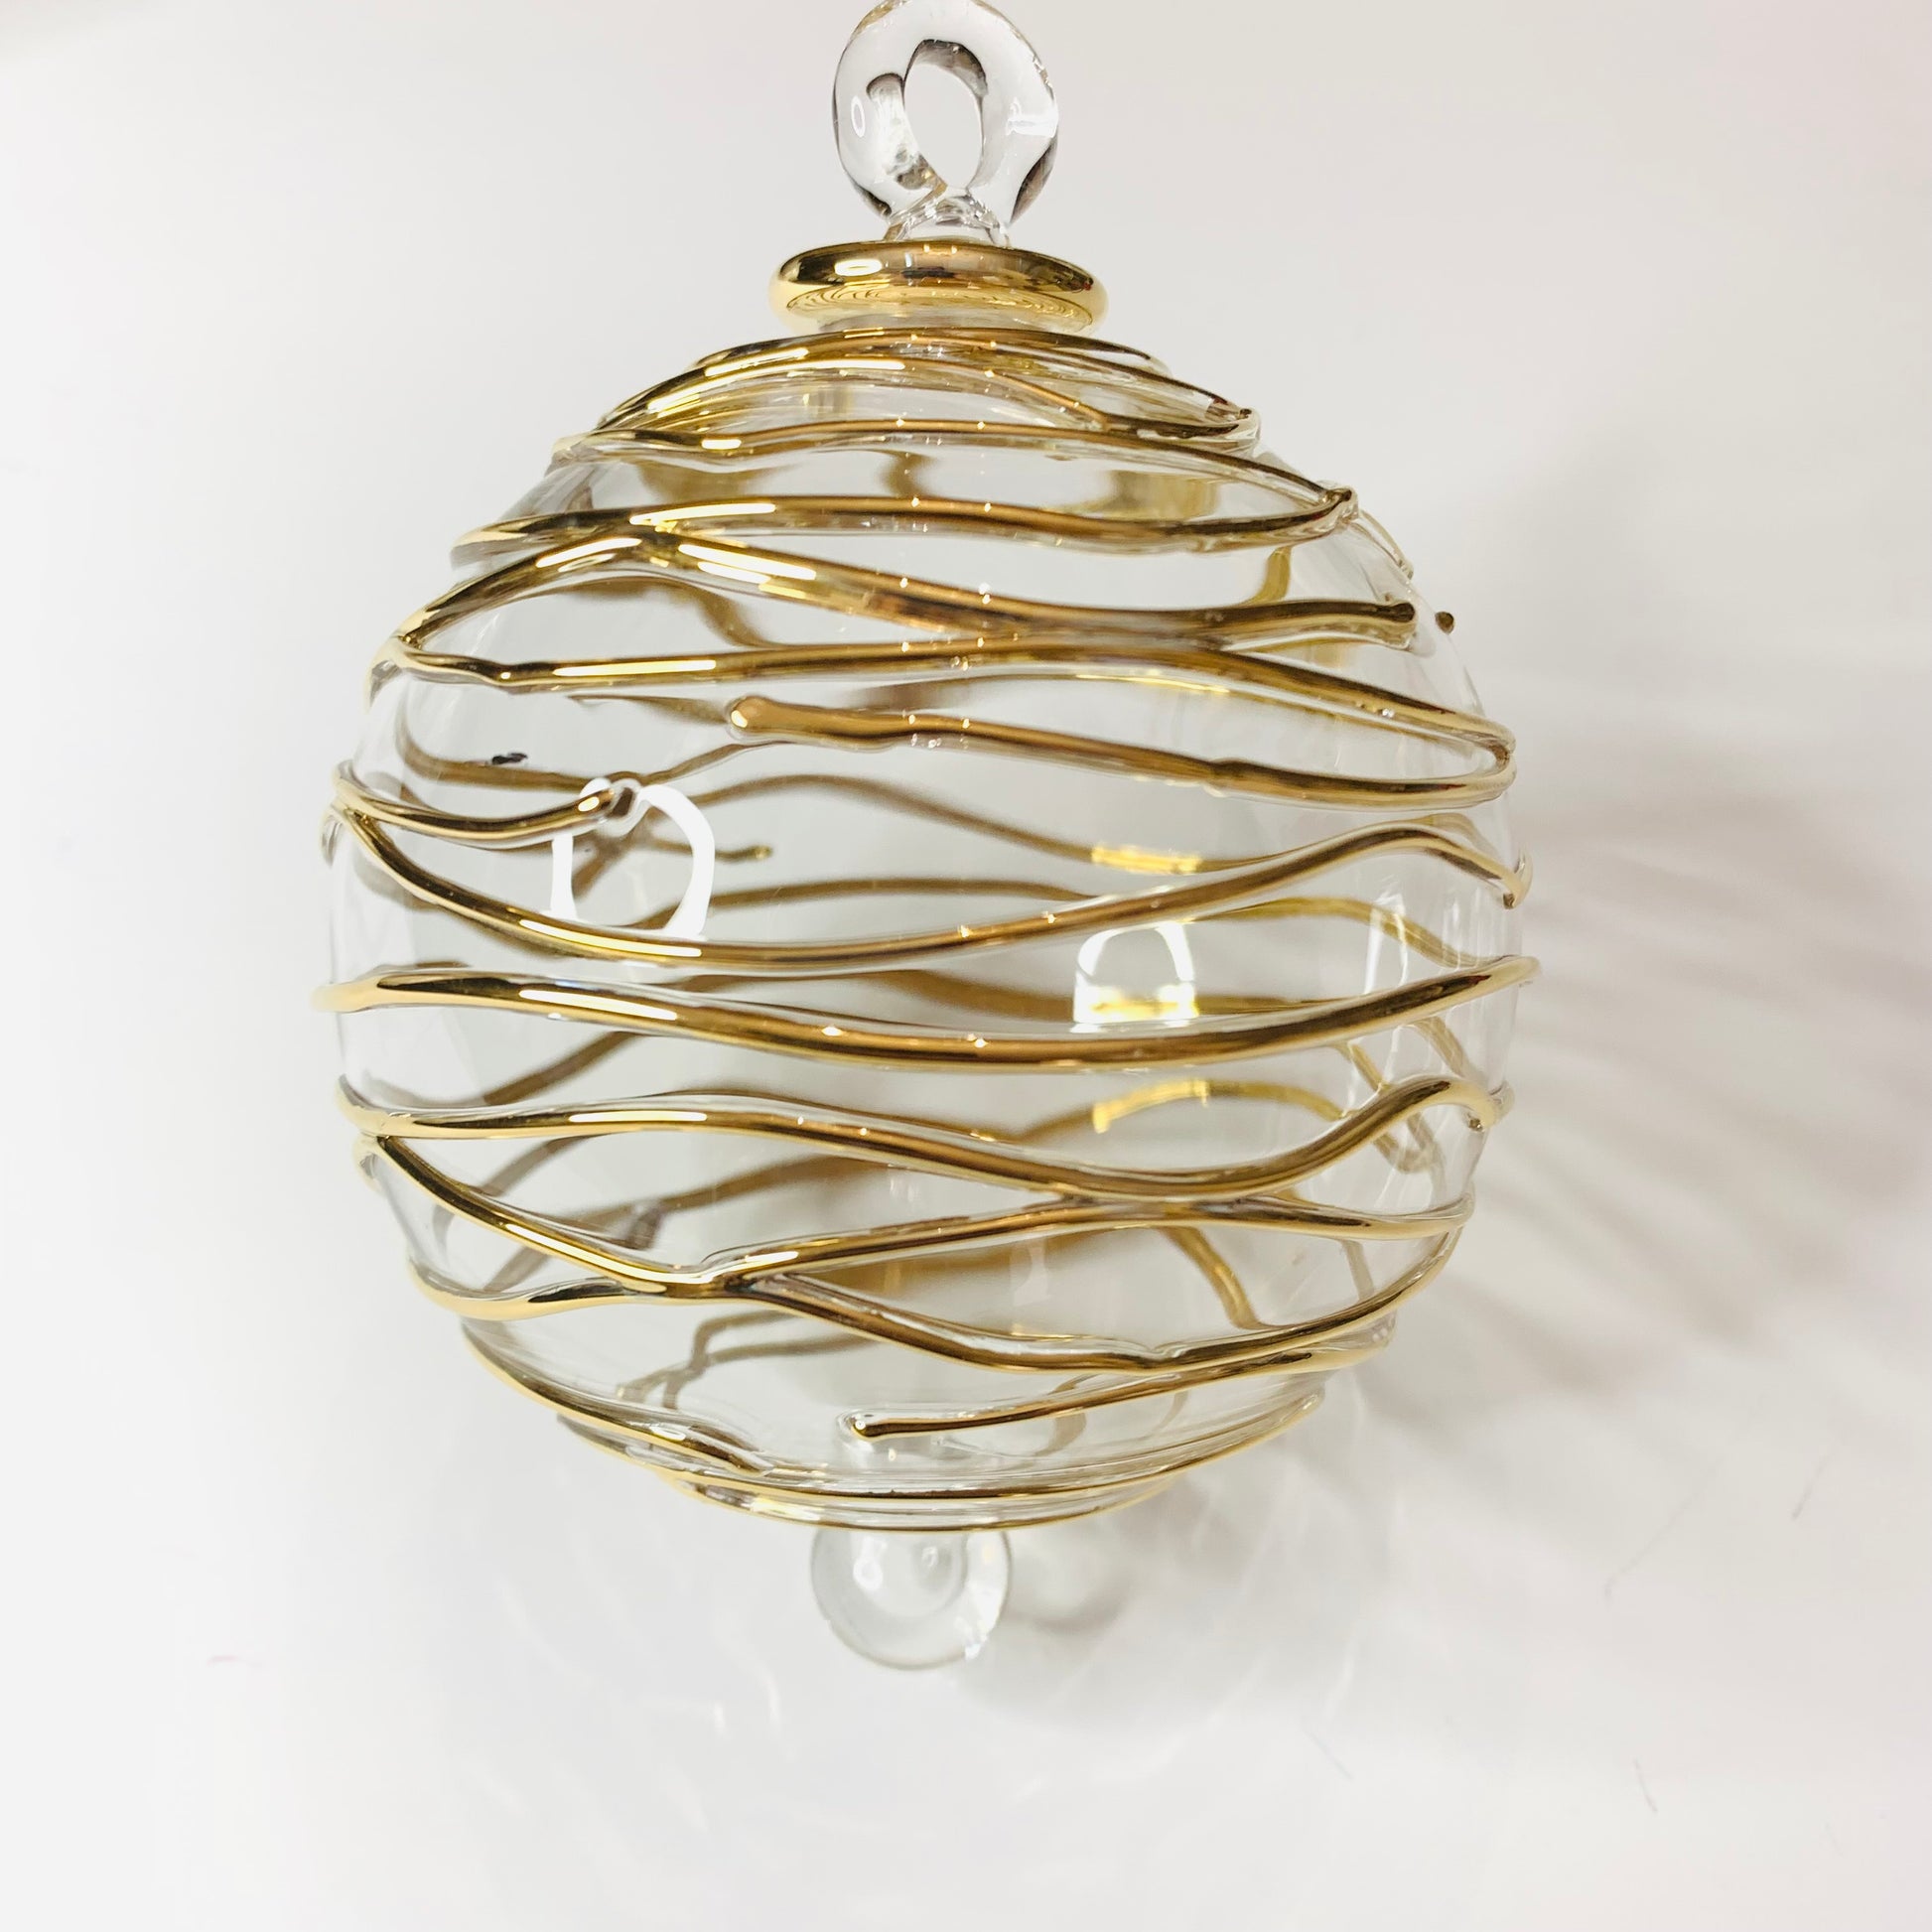 Blown Glass Ornament - Gold Spiral